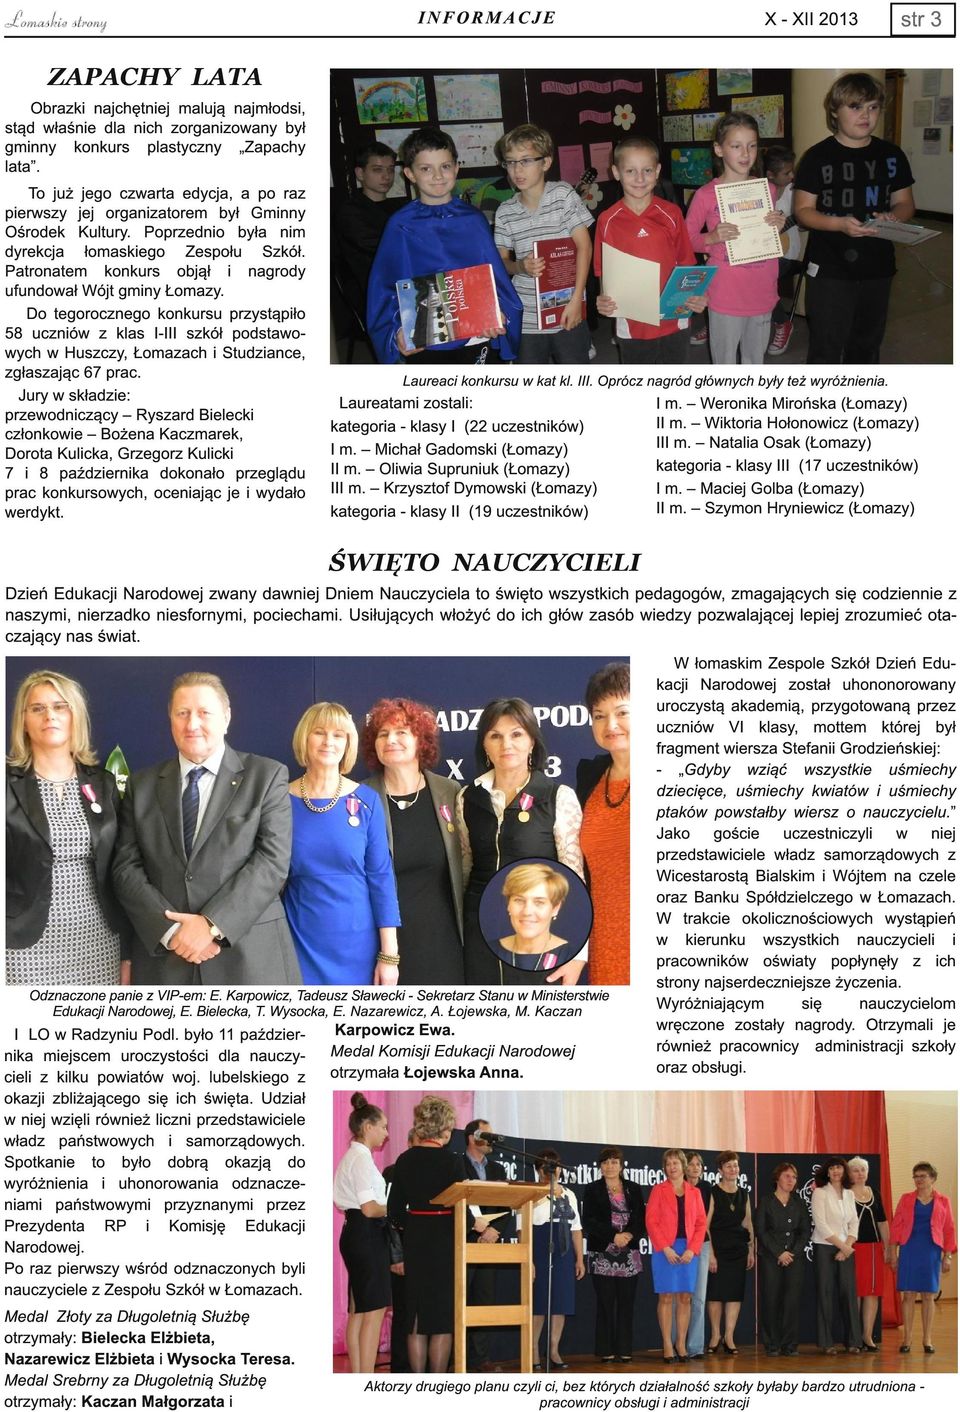 Patronatem konkurs objął i nagrody ufundował Wójt gminy Łomazy. Do tegorocznego konkursu przystąpiło 58 uczniów z klas I-III szkół podstawowych w Huszczy, Łomazach i Studziance, zgłaszając 67 prac.